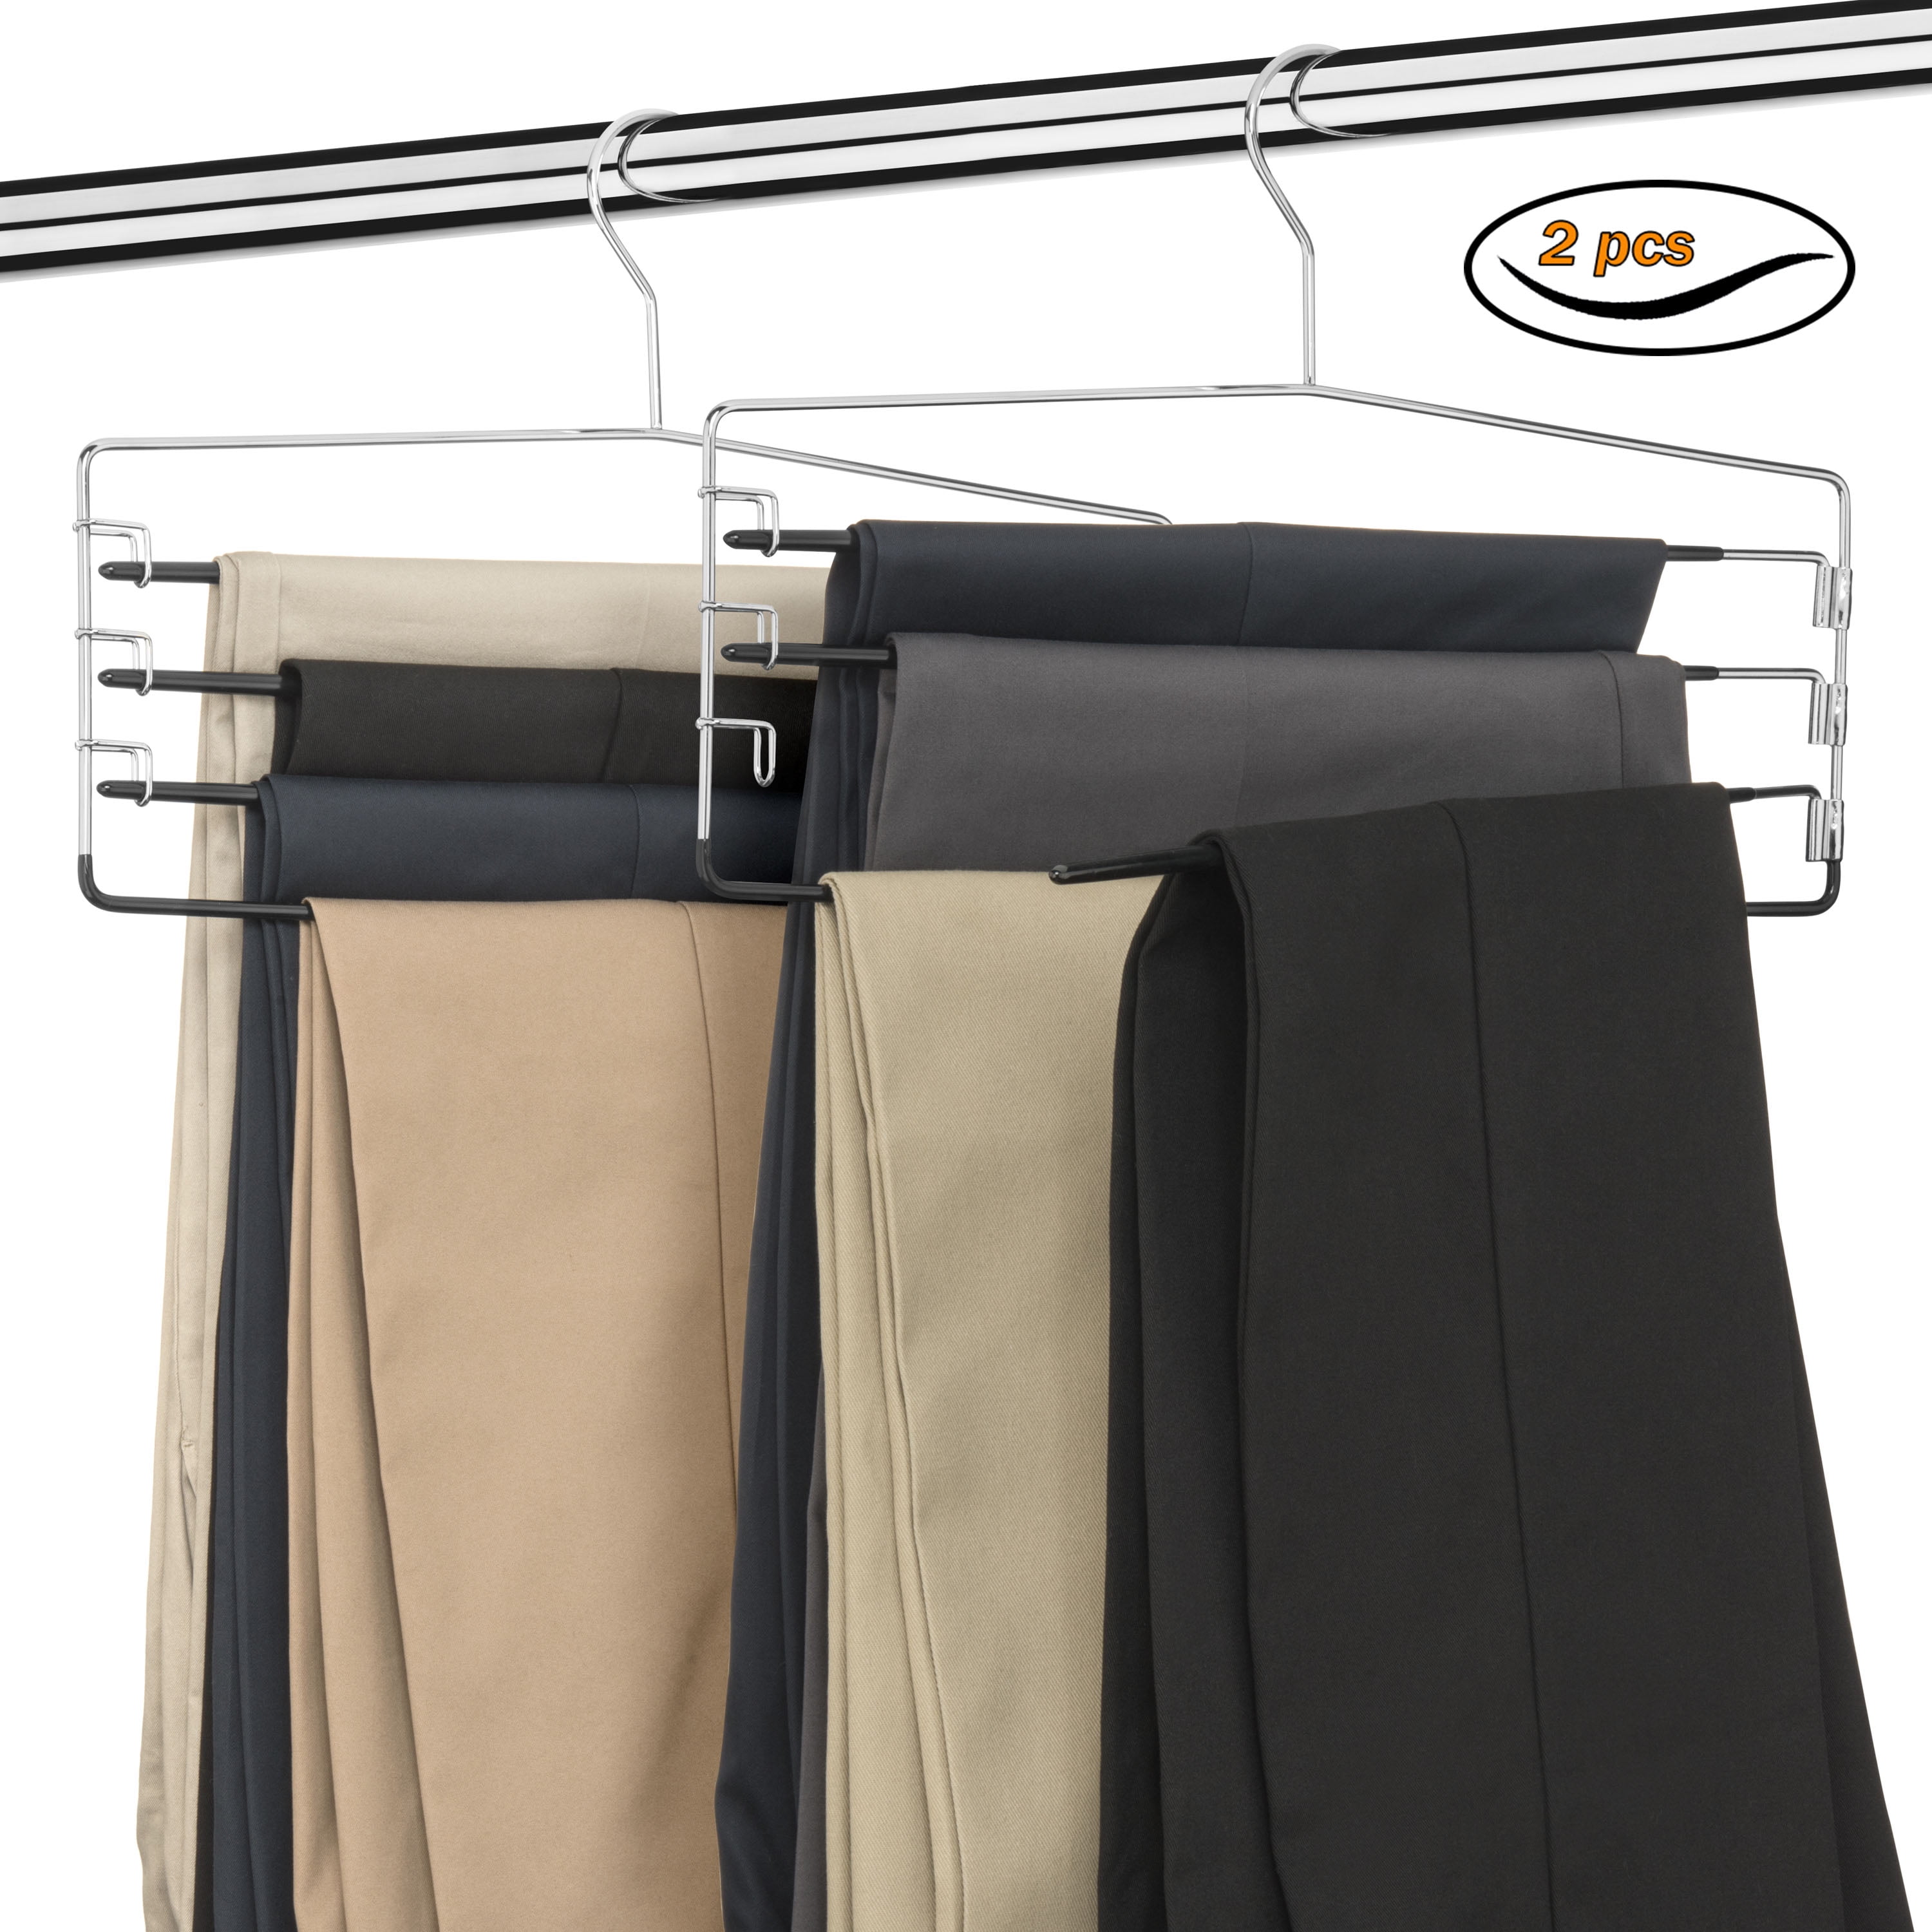 Euro Space-Saving Shirt with Pant Bar & Skirt Hook Hanger, 42-PTU